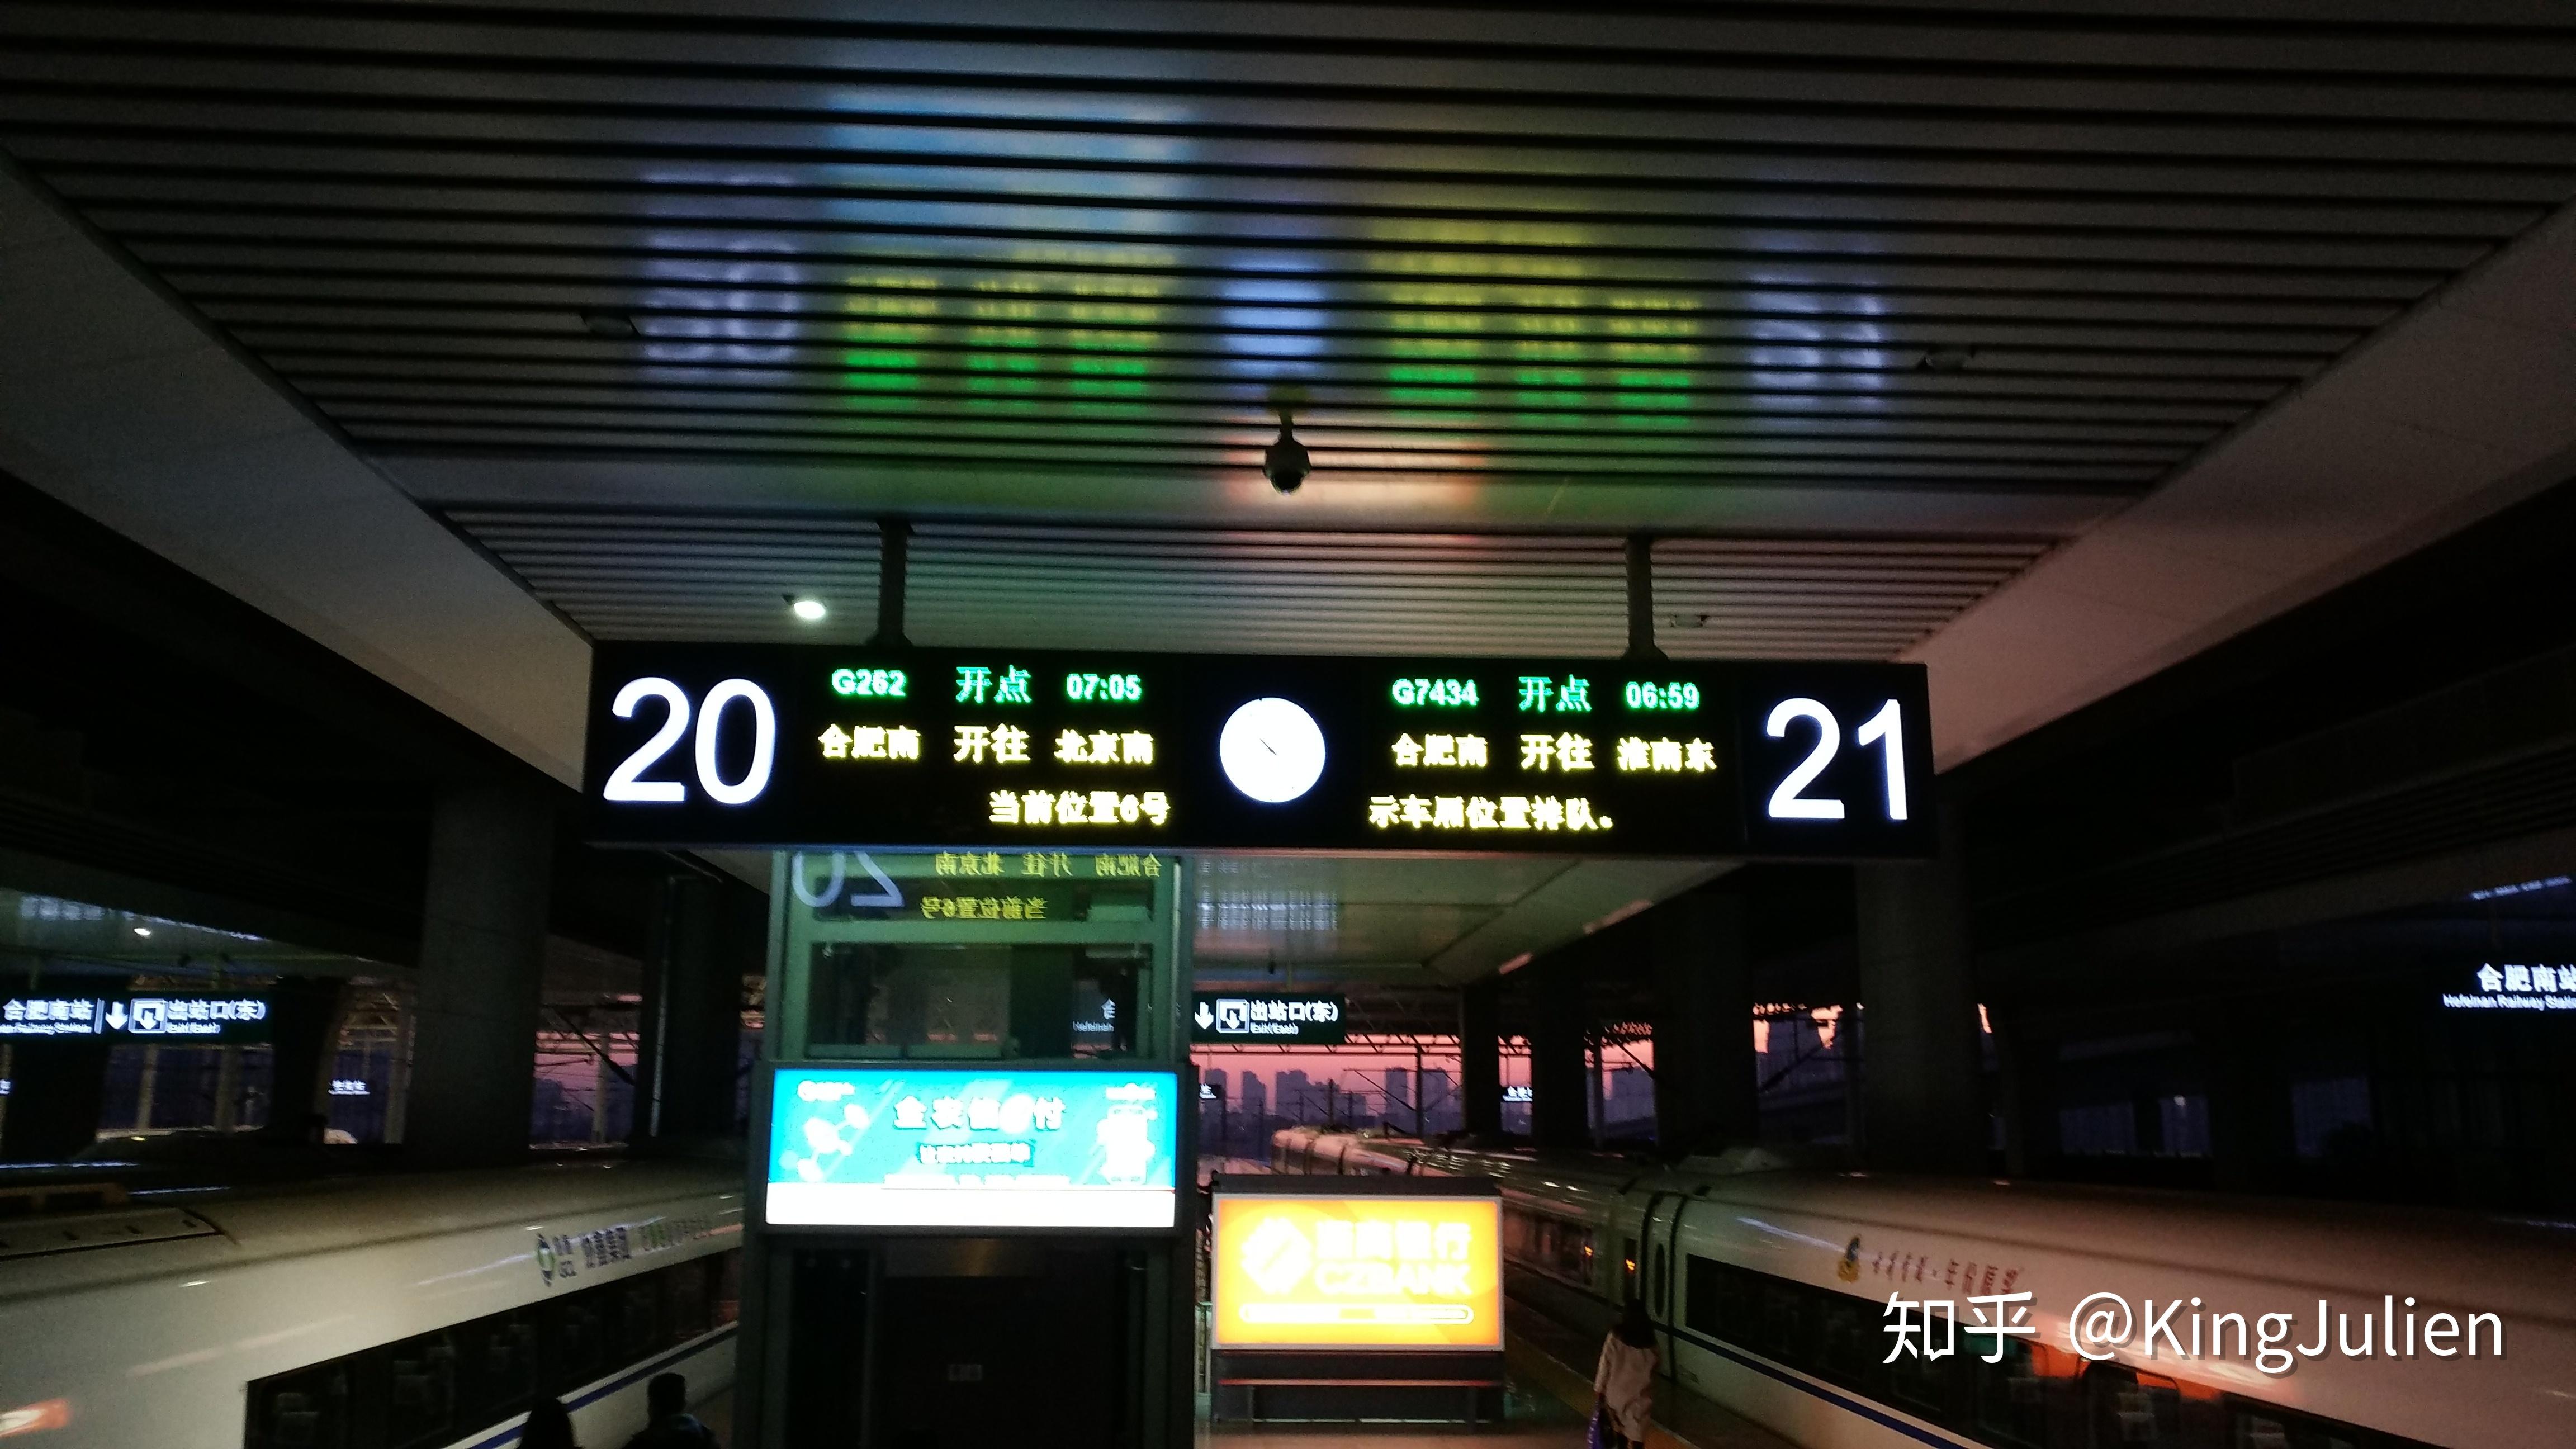 如何评价中国铁路2020年4月调图?